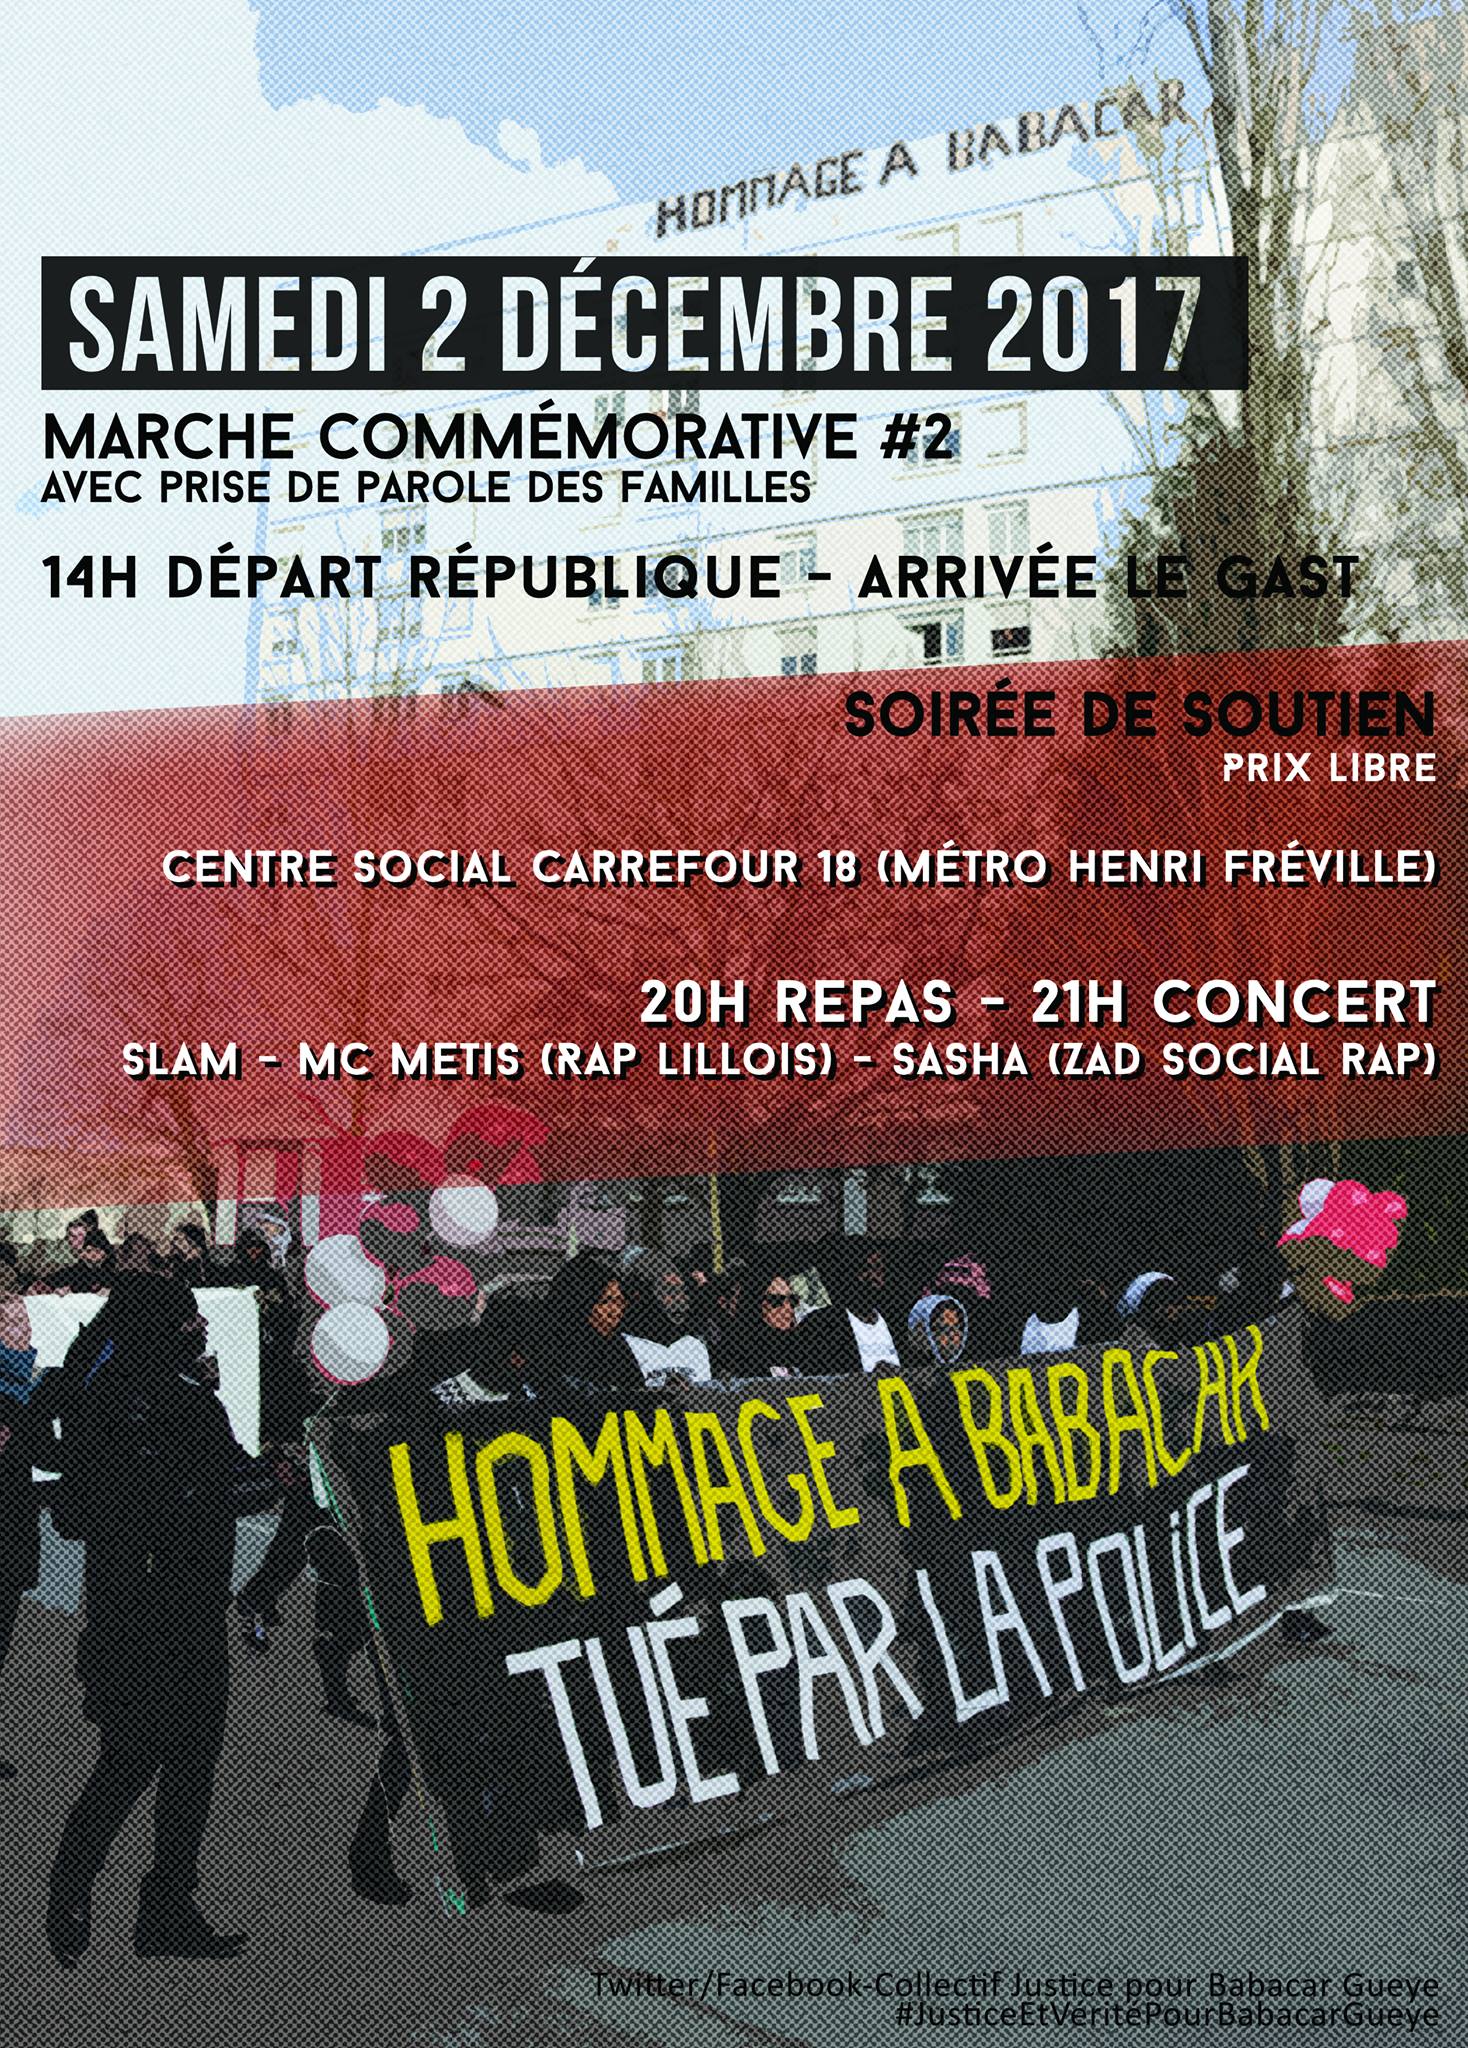 Marche et soirée en hommage à Babacar Gueye le 02 décembre 2017 à Rennes